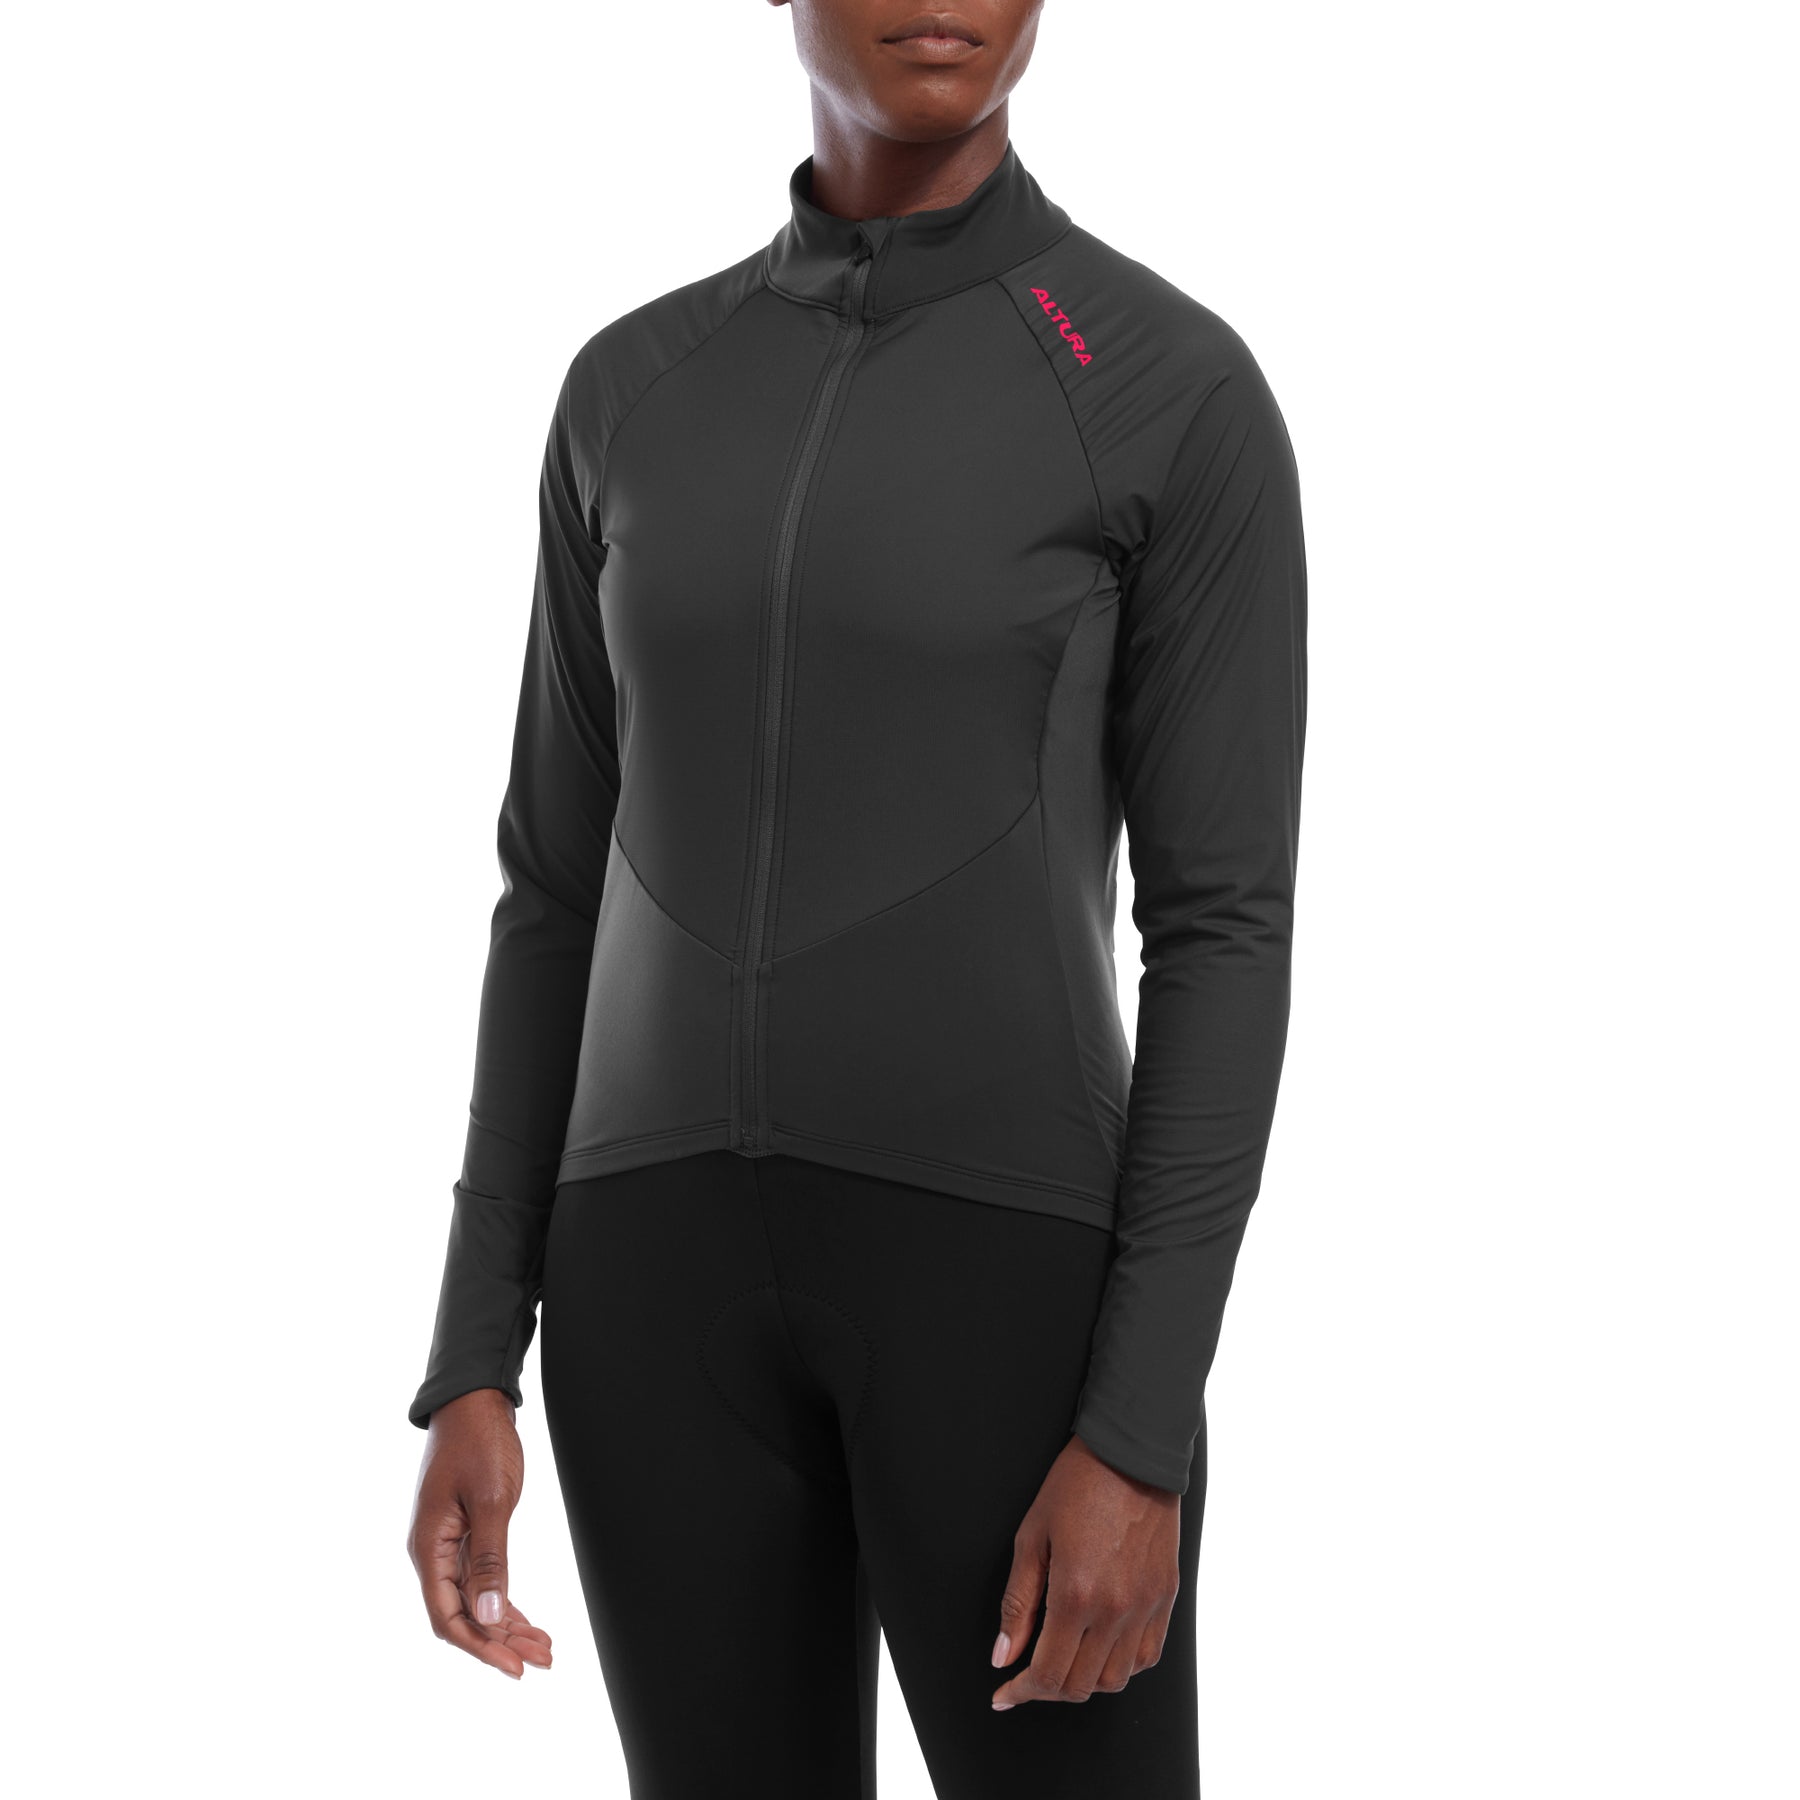 Altura Endurance Women's Long Sleeve Jersey Carbon 16